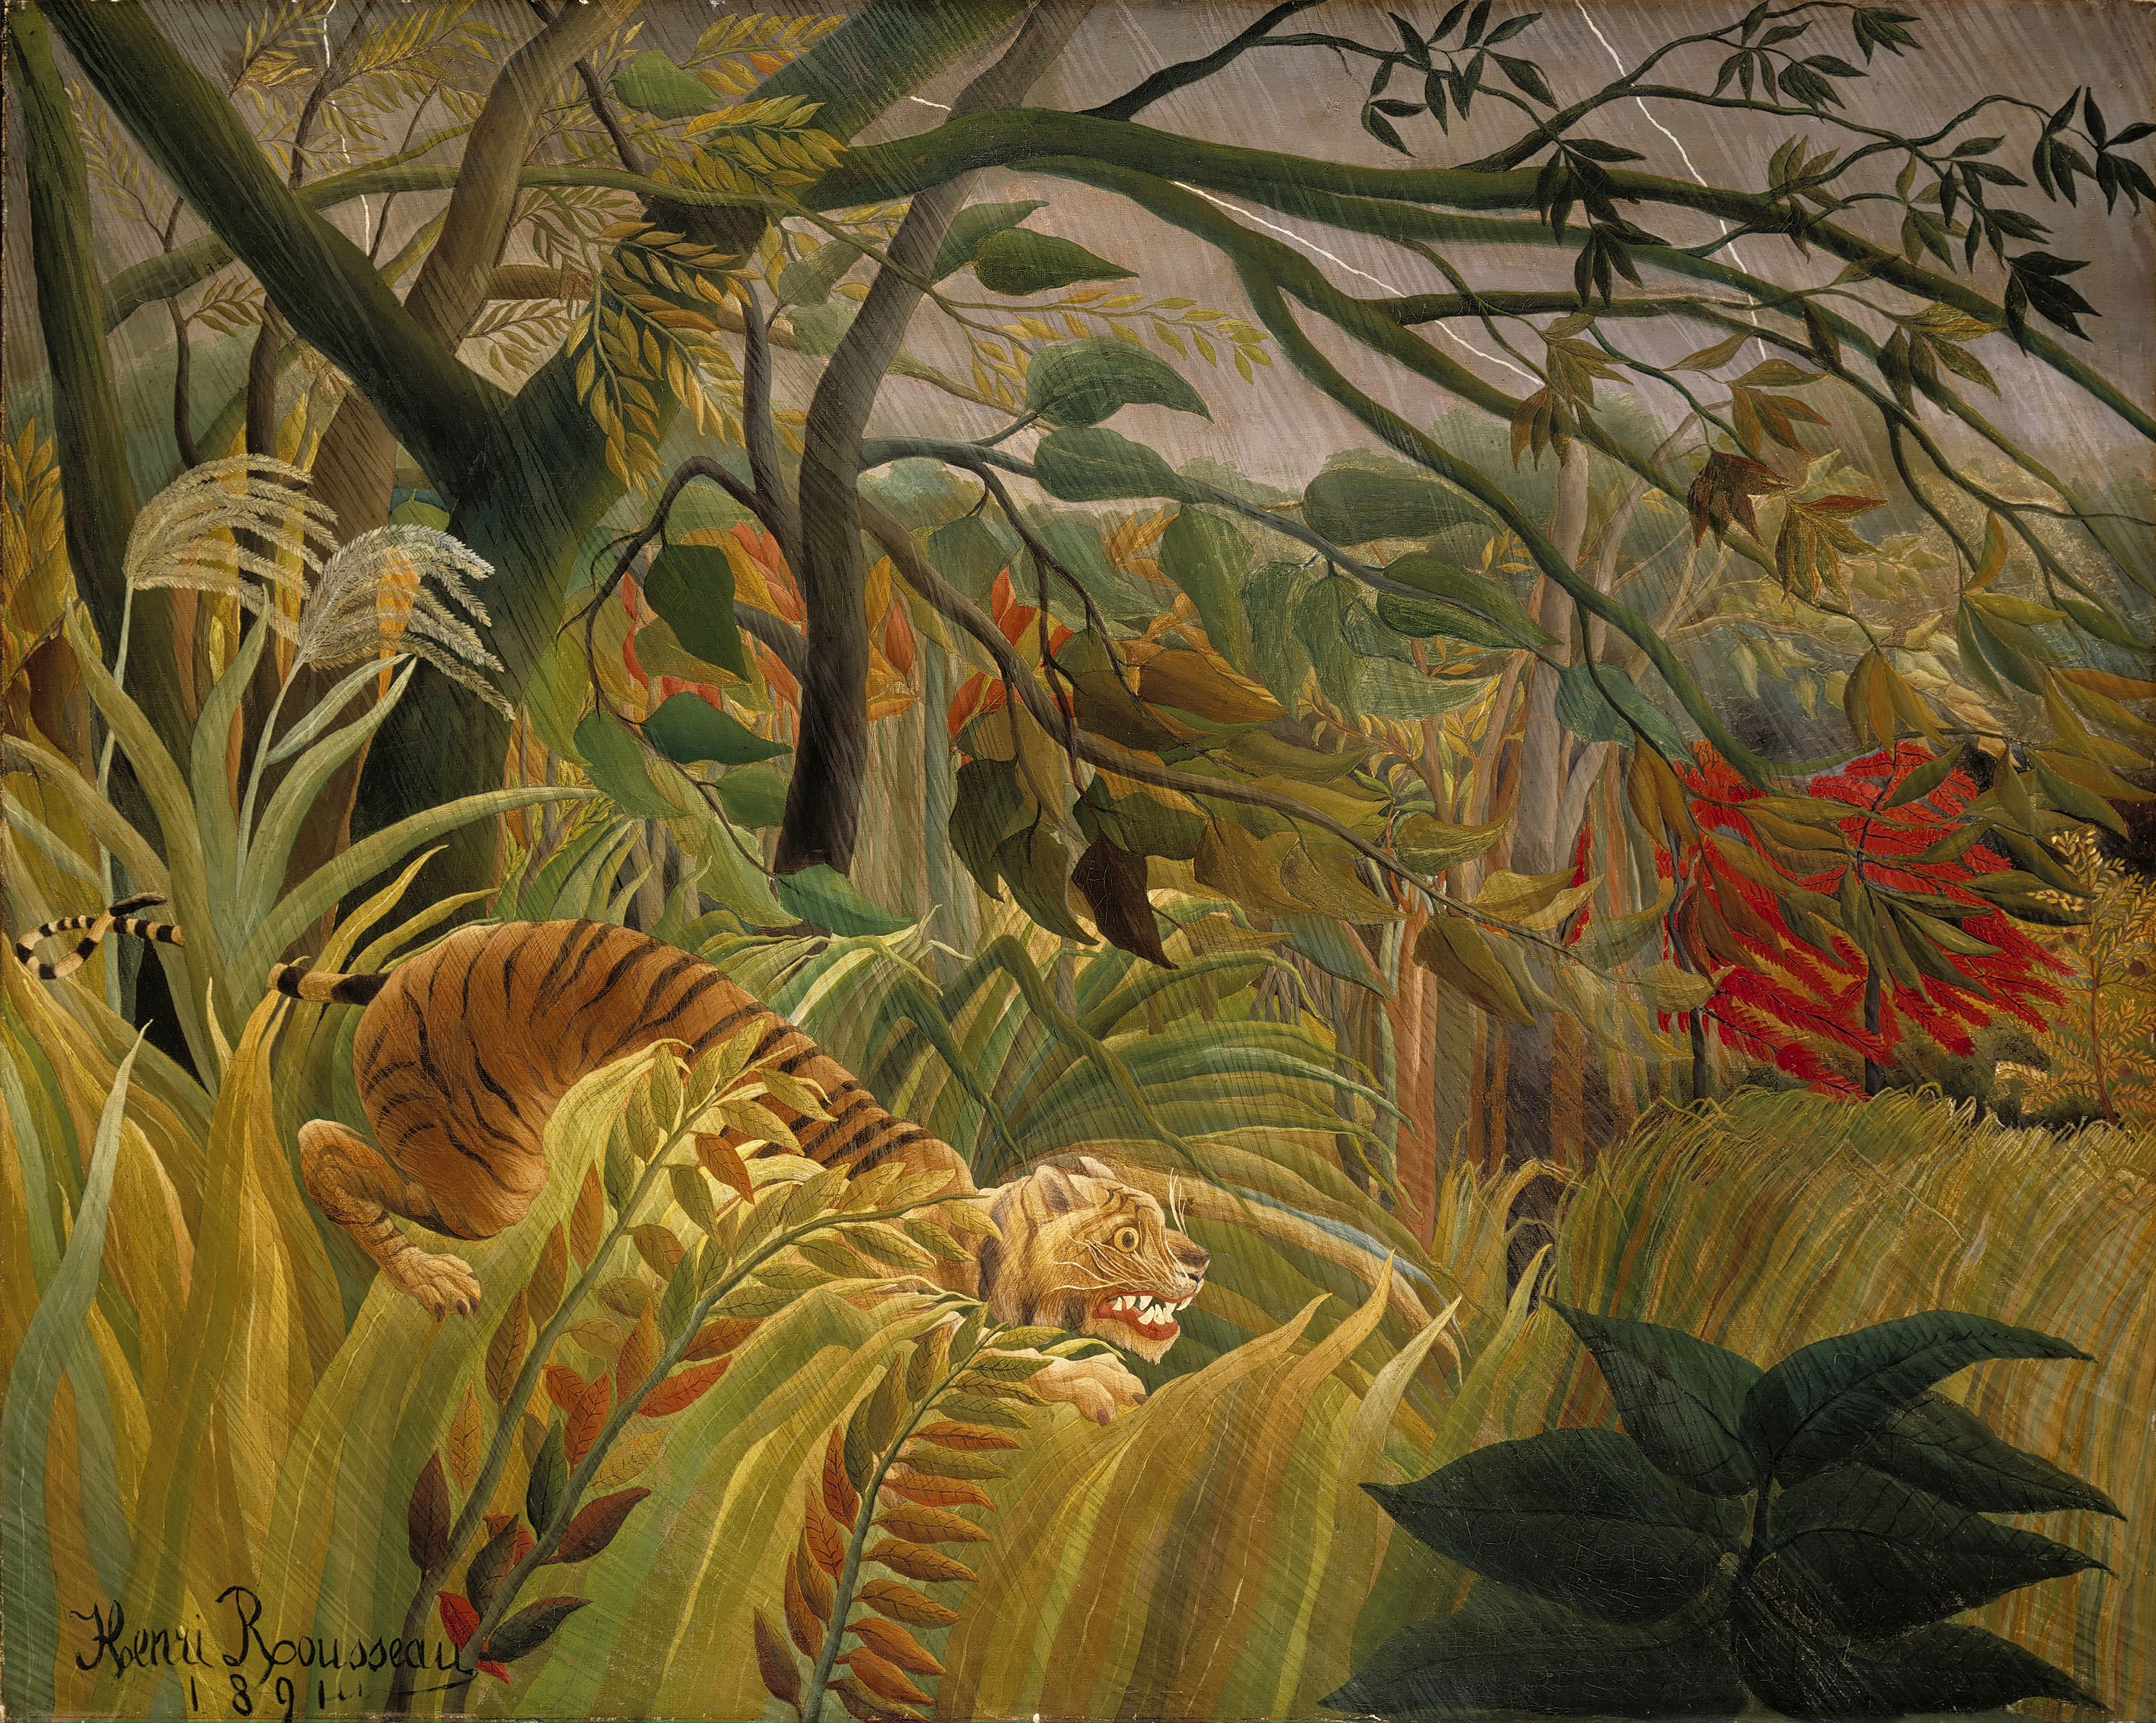 경악-숲속의 폭풍(Tiger in a Tropical Storm) by Henri Rousseau - 1891 - 129.8 x 161.9 cm 